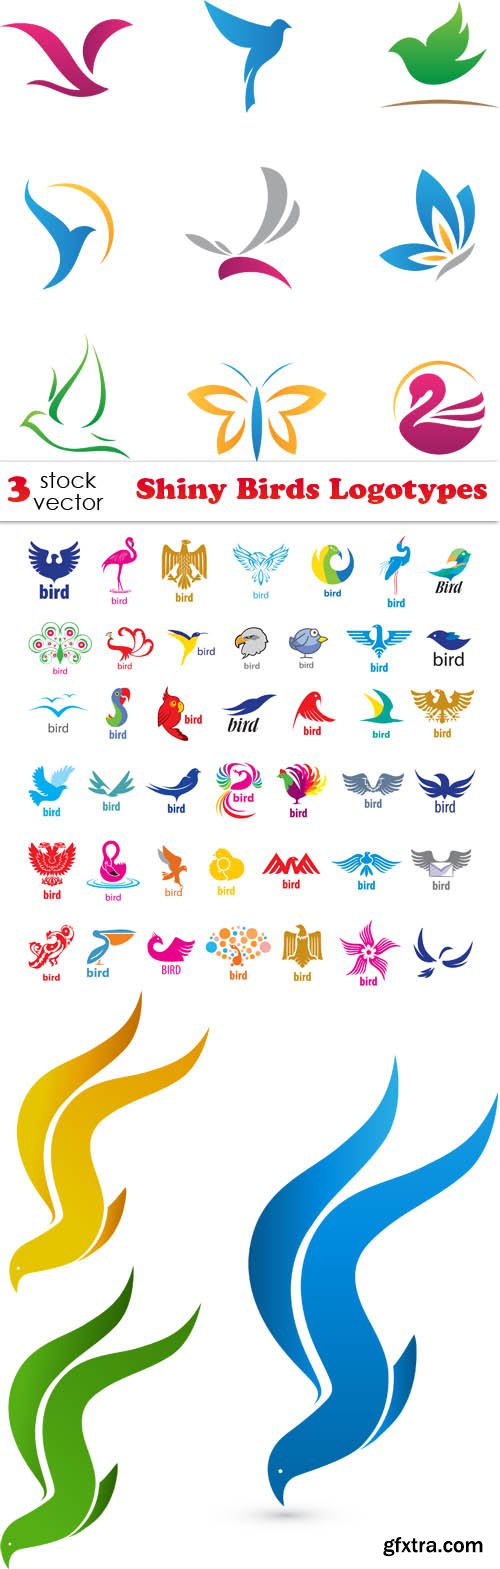 Vectors - Shiny Birds Logotypes